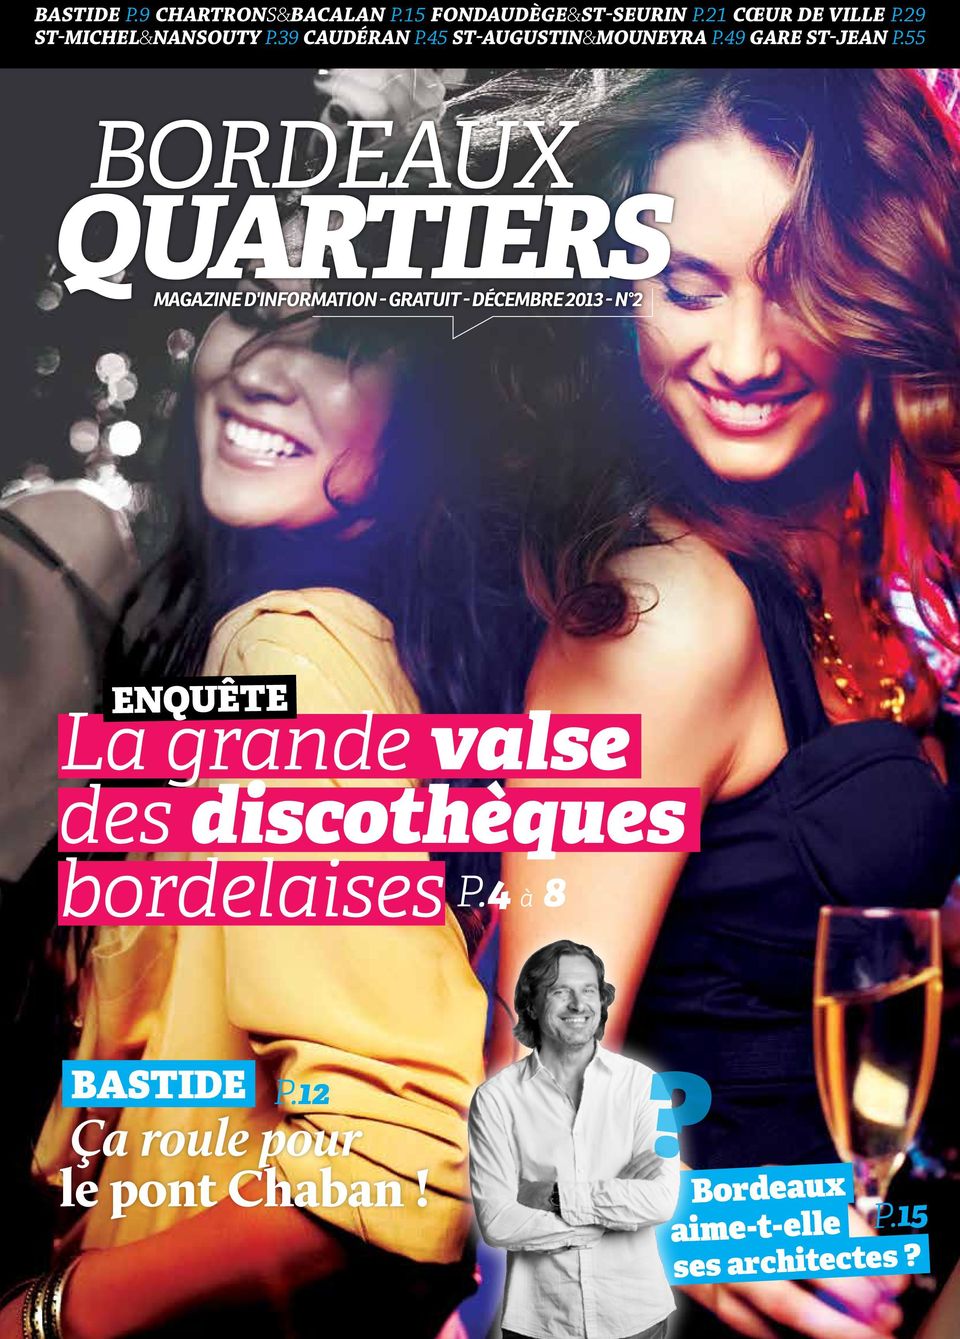 55 bordeaux quartiers magazine d'information - gratuit - Décembre 2013 - n 2 enquête La grande